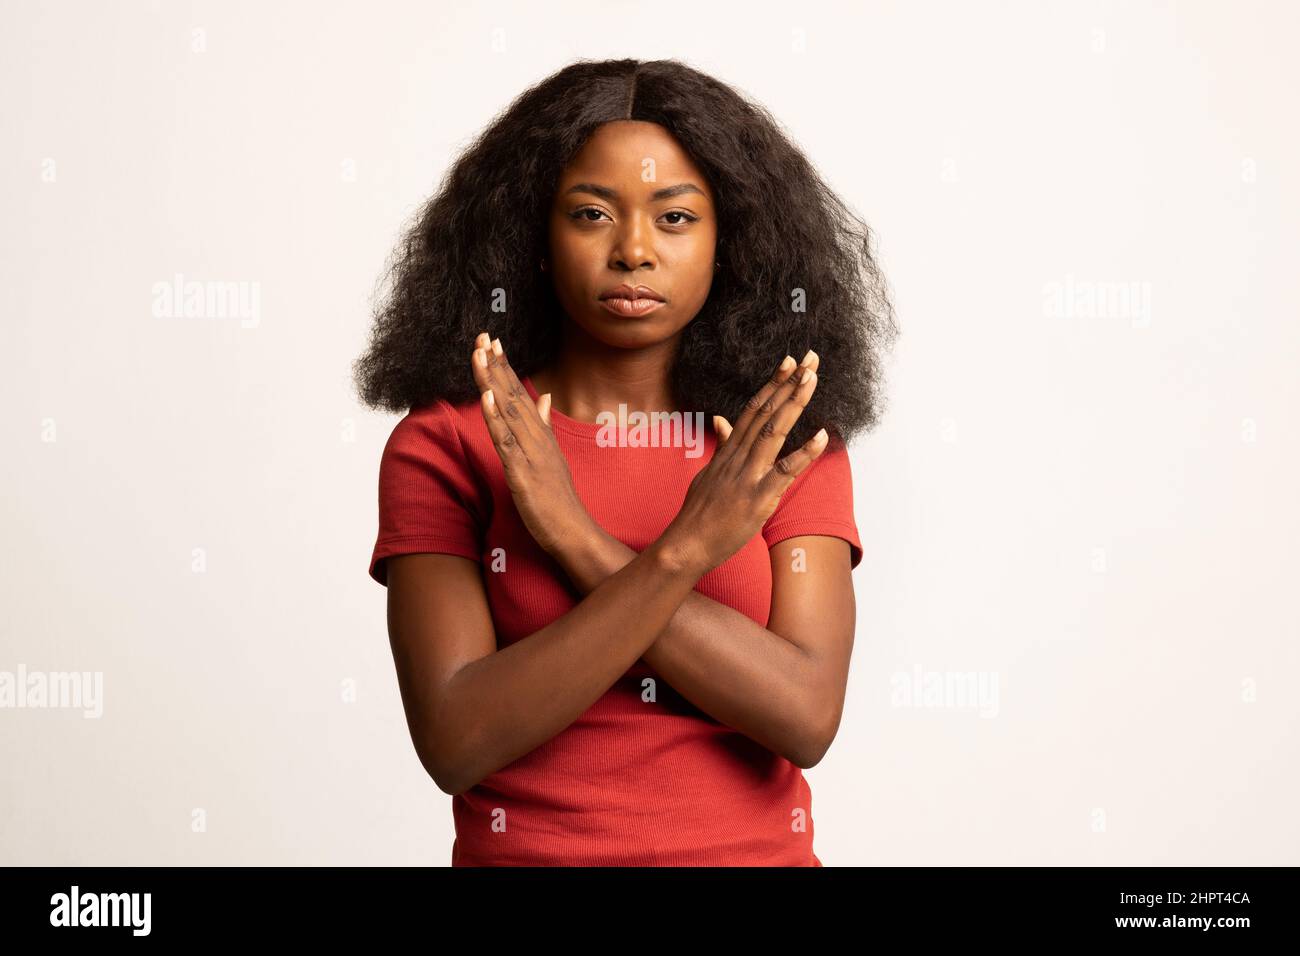 Retrato de una joven mujer negra mostrando un gesto de detención con las manos cruzadas Foto de stock